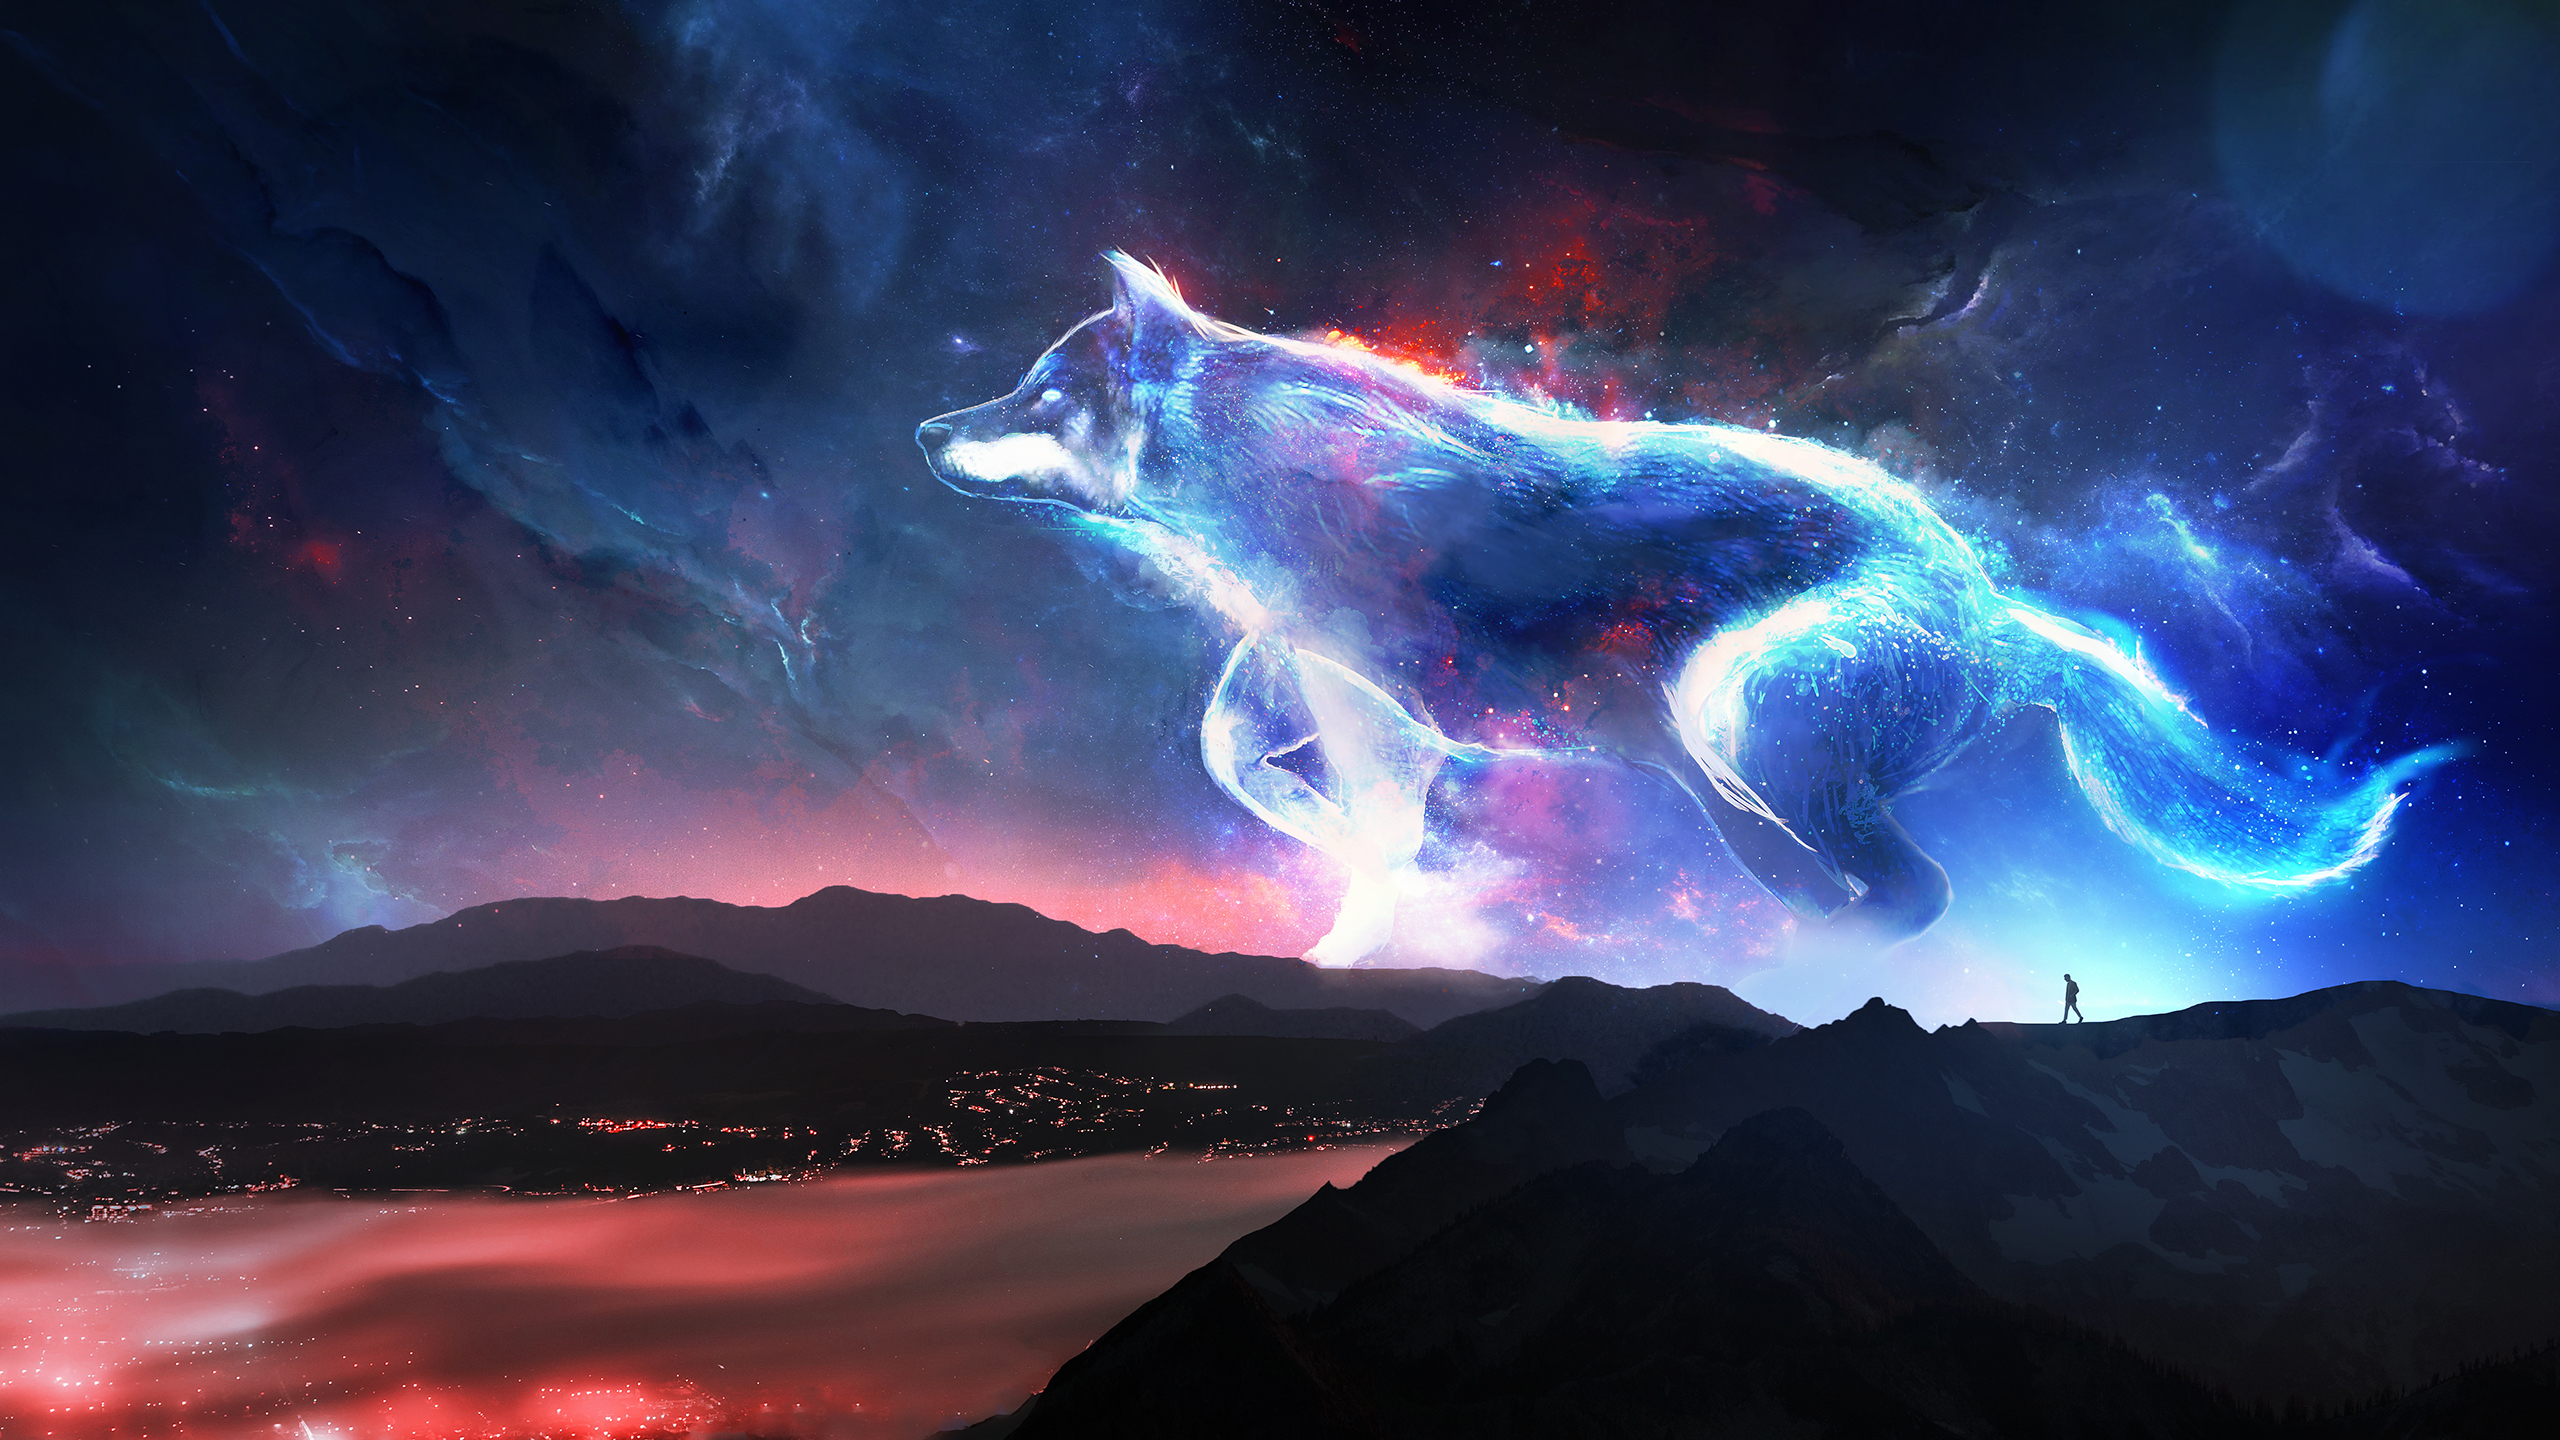 Волк на фоне космоса